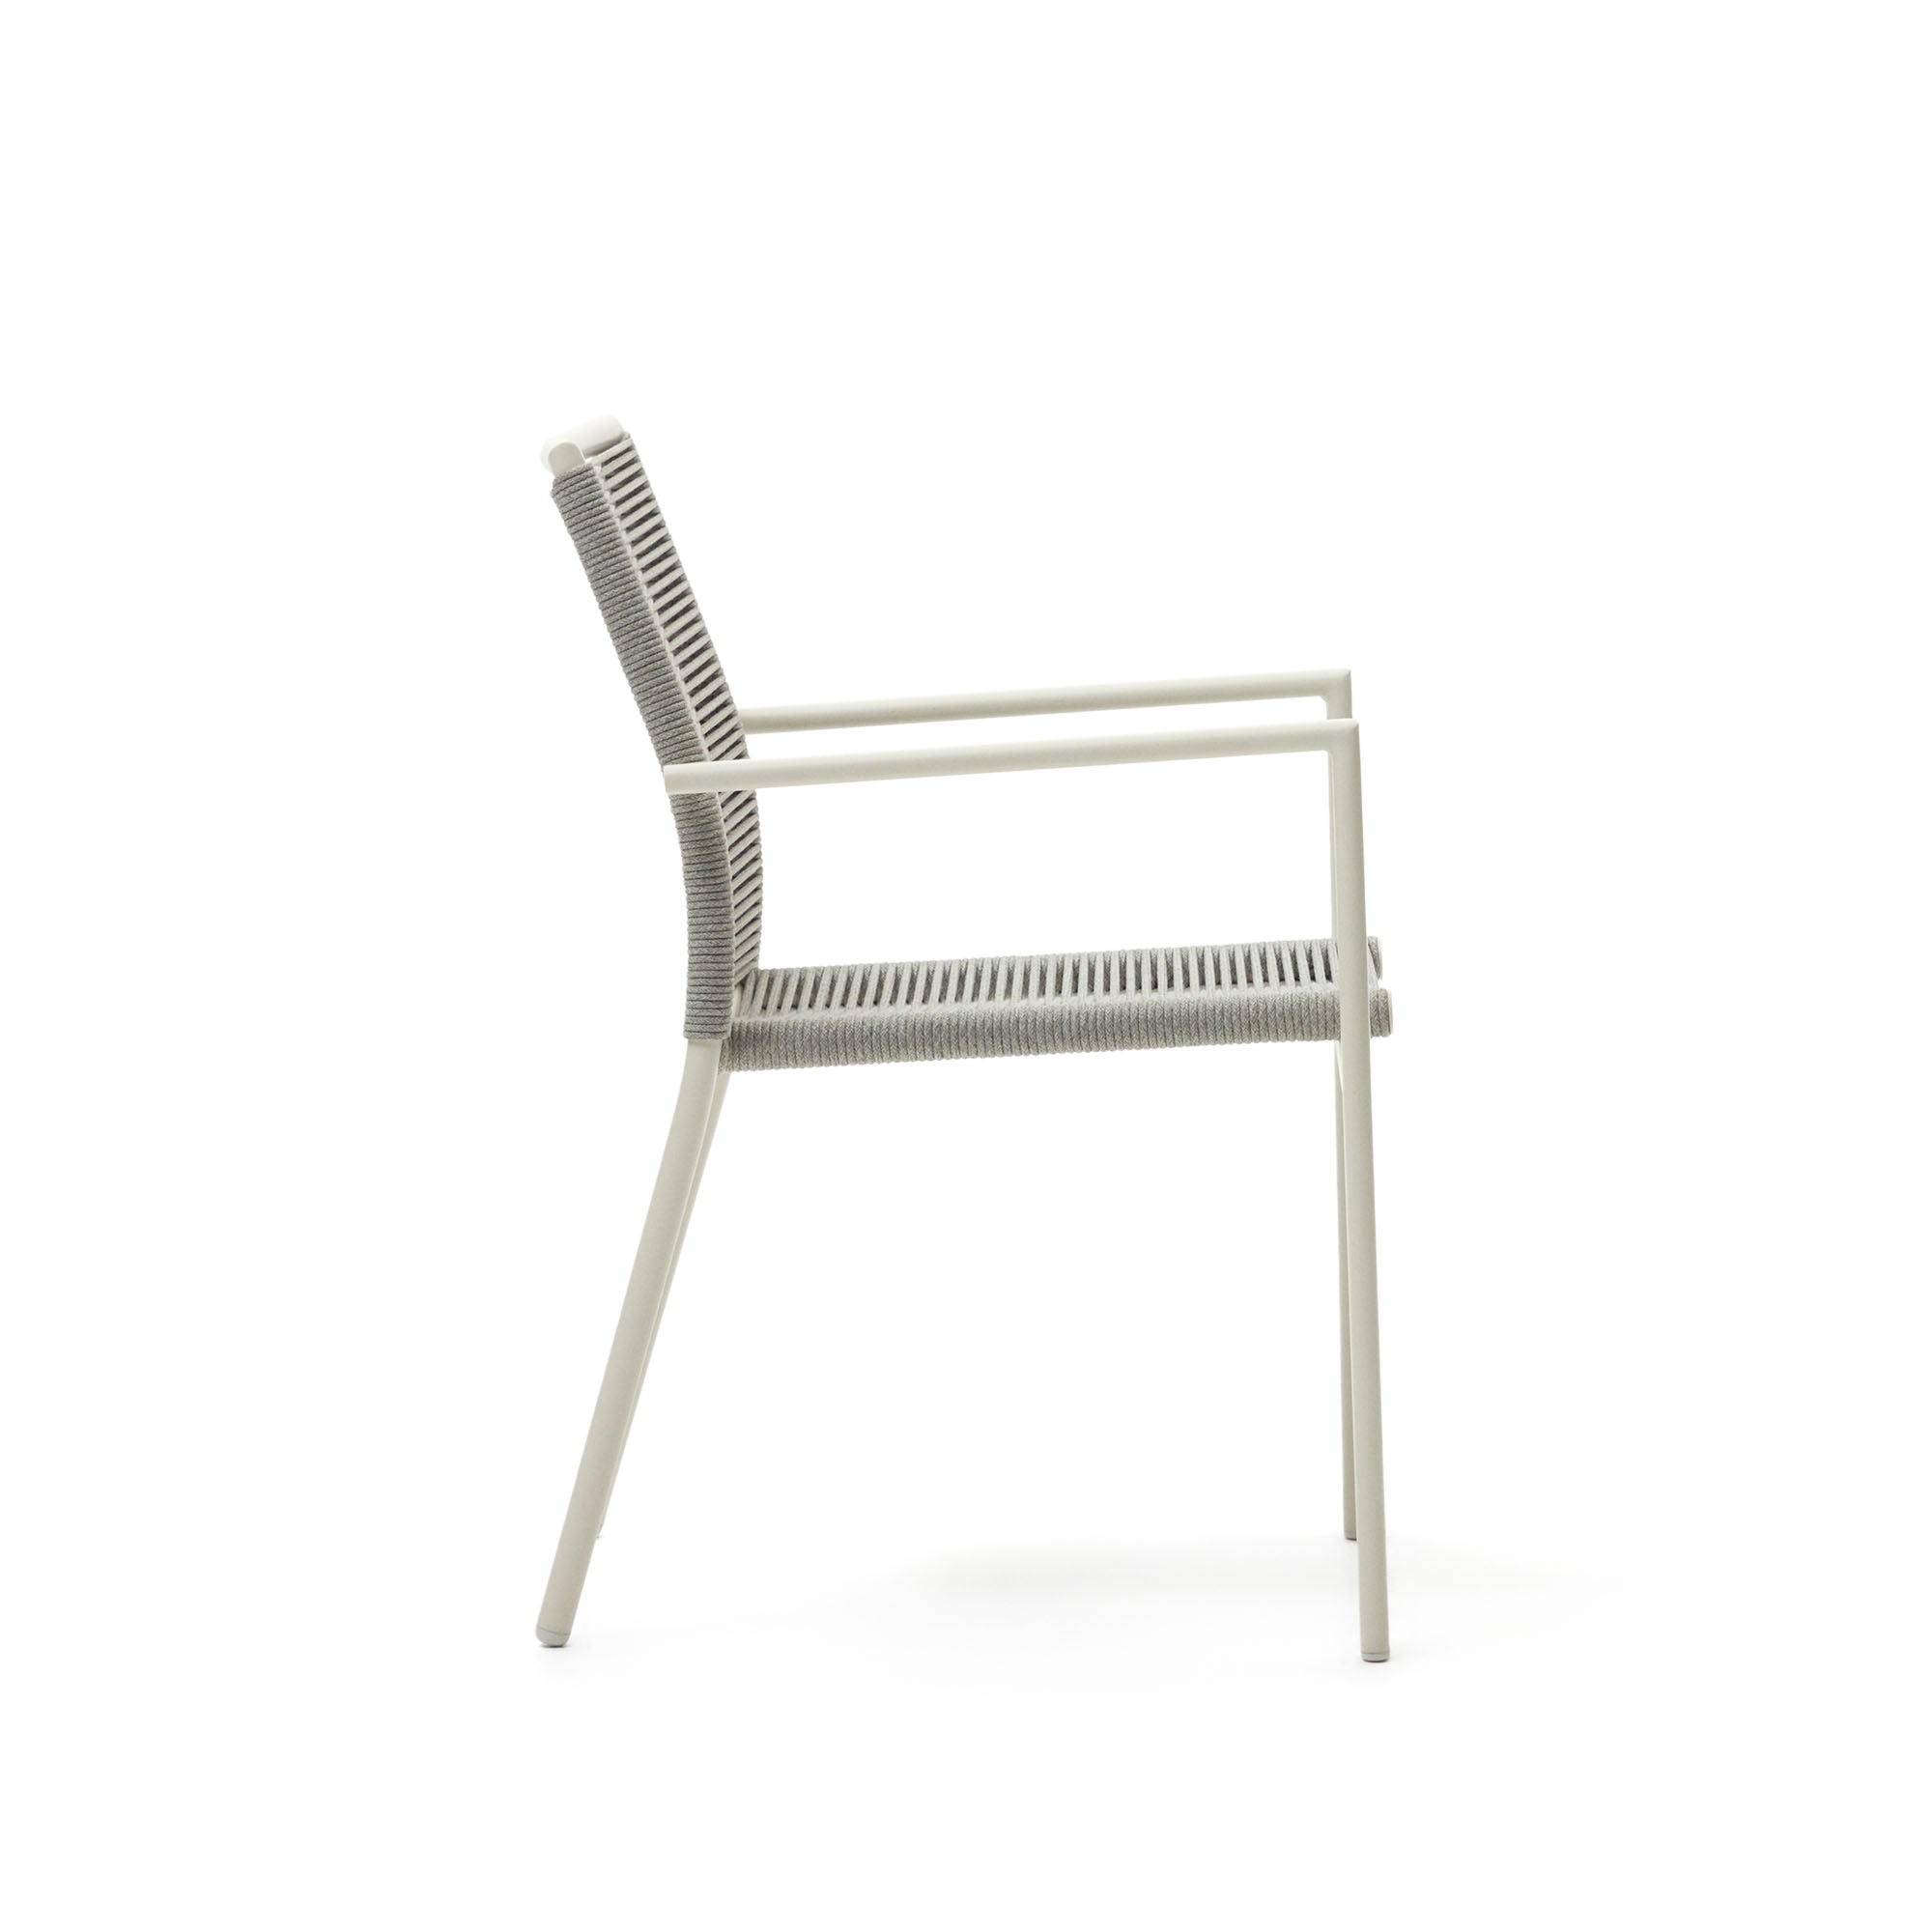 Culip alumíniumból és zsinórból készült, egymásba rakható kültéri szék fehér színben